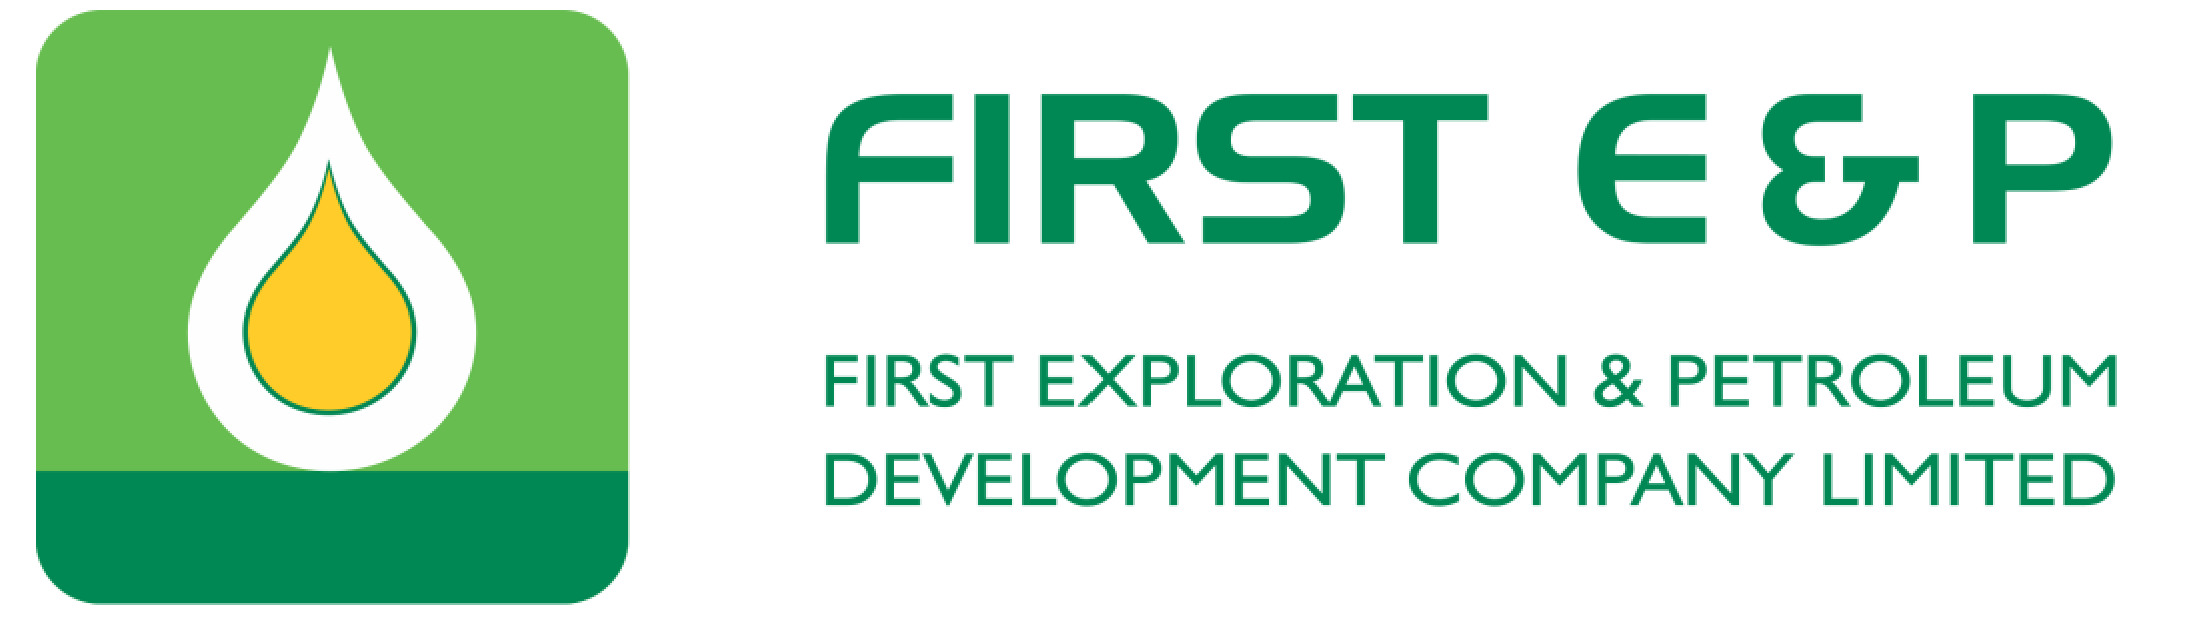 FIRST E&P logo colour